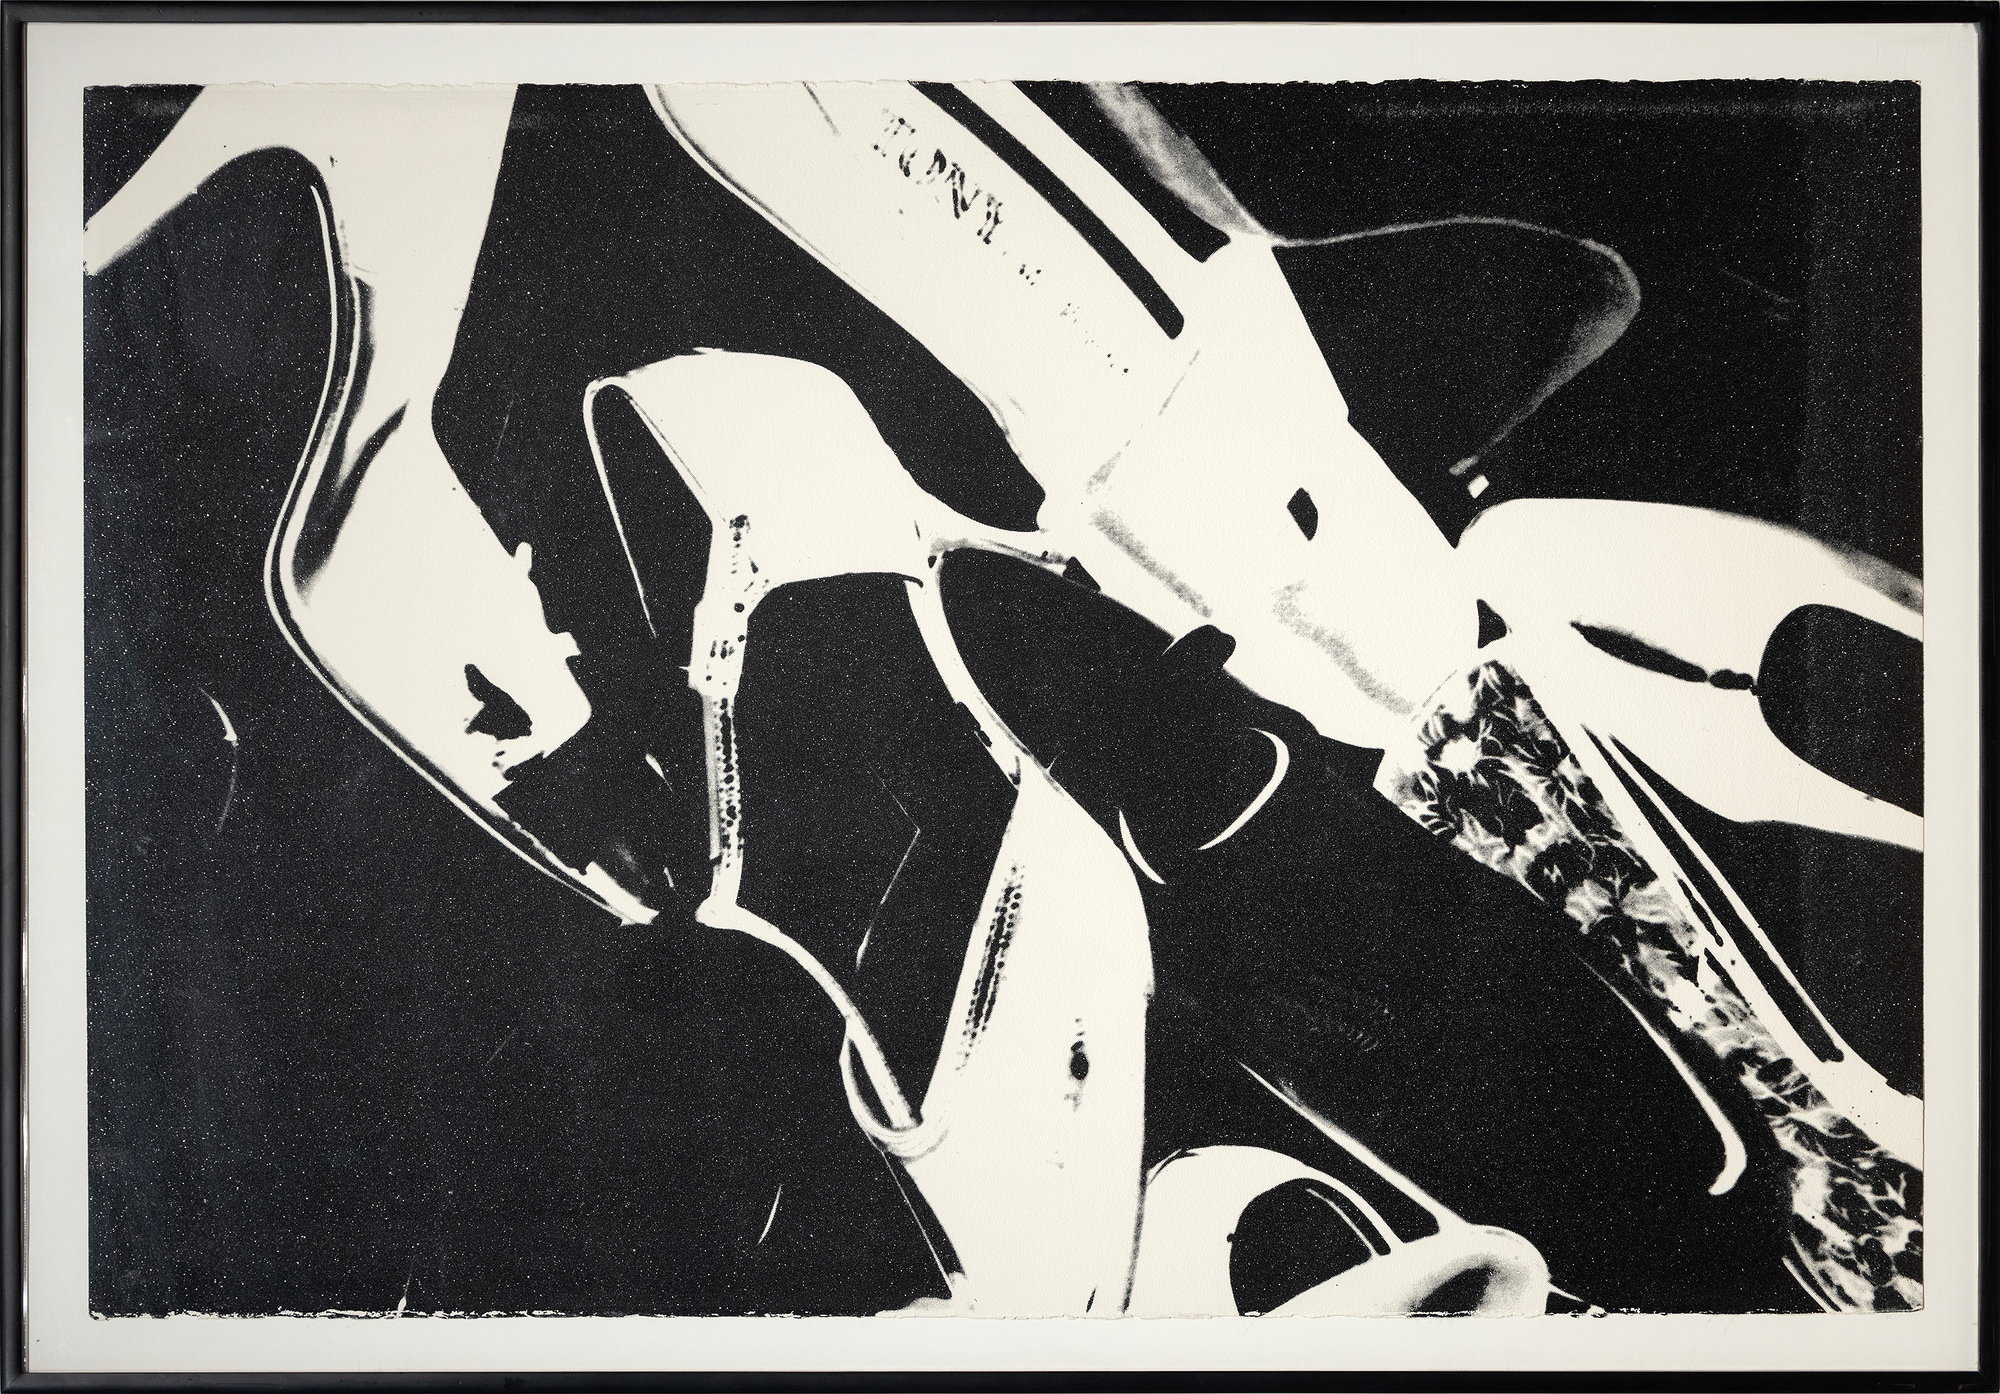 Andy Warhol es sinónimo del arte estadounidense de la segunda mitad del siglo XX y es conocido por sus icónicos retratos y productos de consumo, que mezclan la cultura popular y las bellas artes, redefiniendo lo que puede ser el arte y cómo nos acercamos a él. Aunque muchas de las obras de Warhol no representan a personas famosas, sus representaciones de objetos inanimados elevan a sus sujetos a un nivel de celebridad. Warhol representó por primera vez los zapatos al principio de su carrera, cuando trabajaba como ilustrador de moda, y volvió a tratar el tema en la década de 1980, combinando su fascinación por el consumismo y el glamour. Con su constante deseo de fusionar la alta y la baja cultura, Warhol eligió destacar algo tan omnipresente como los zapatos. El tema puede denotar pobreza o riqueza, función o moda. Warhol da un toque de glamour a los zapatos, cubriéndolos con una pátina de polvo de diamante brillante, difuminando aún más el significado entre la necesidad utilitaria y la pieza estilizada.